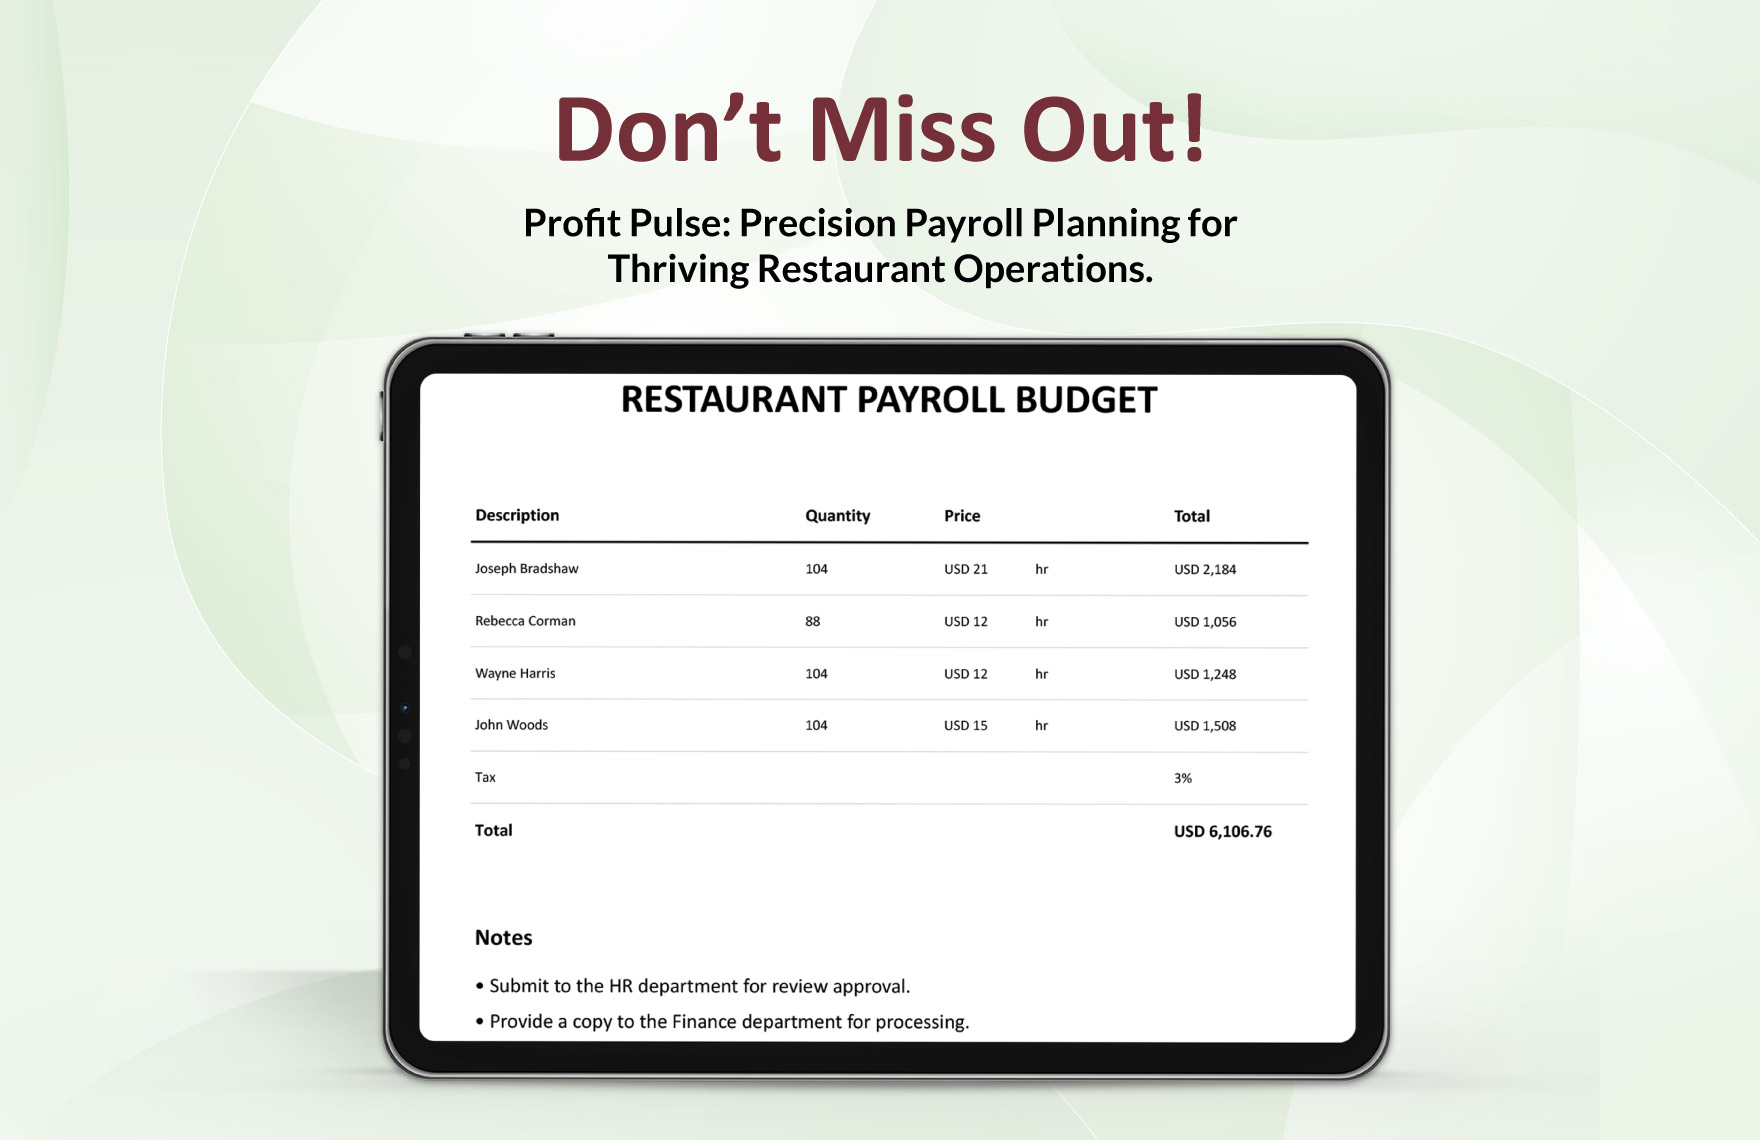 Restaurant Payroll Budget Template